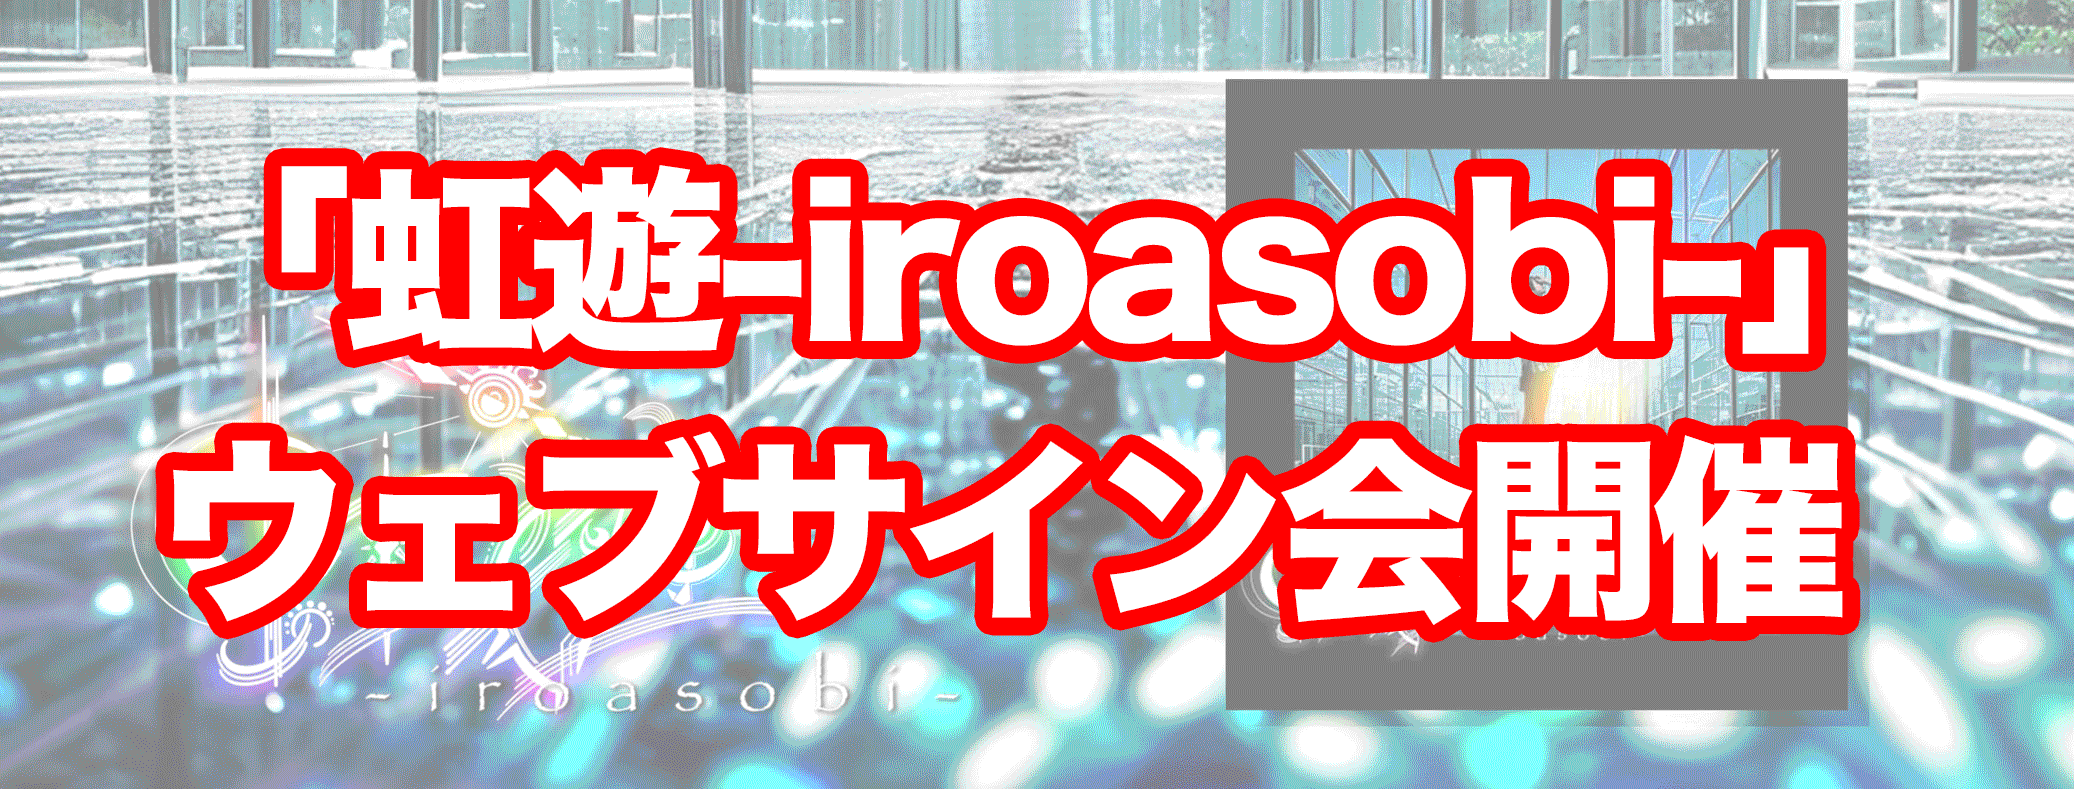 「虹遊-iroasobi-」-ウェブサイン会開催